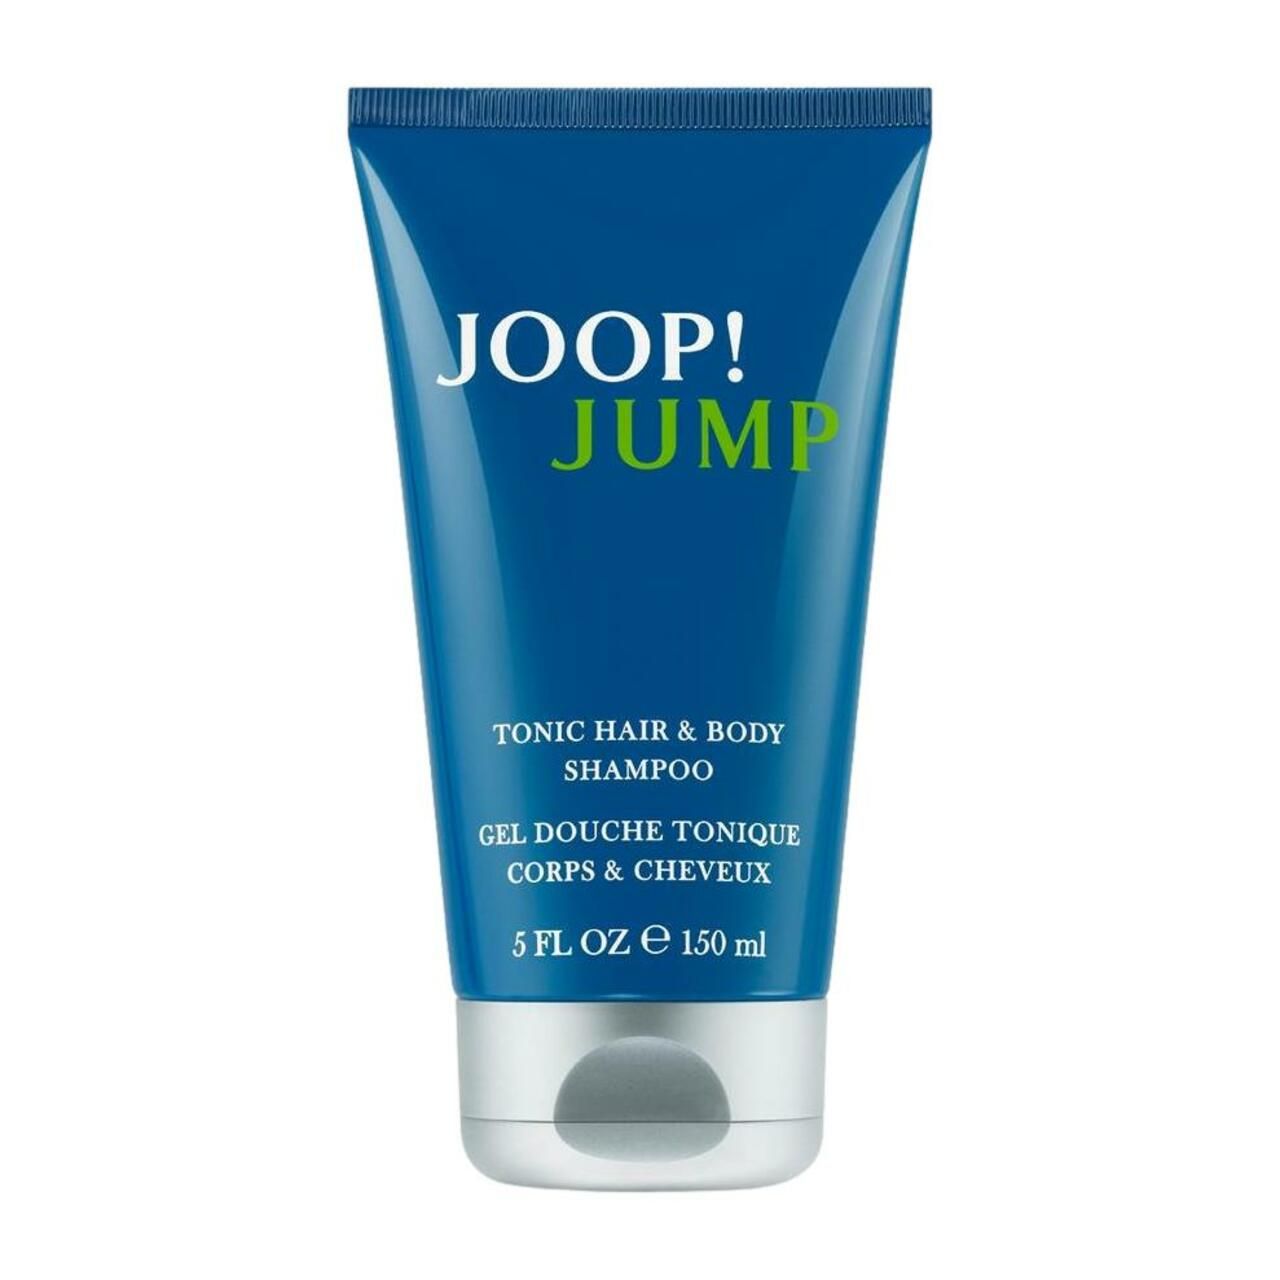 Joop!, Jump Shower Gel